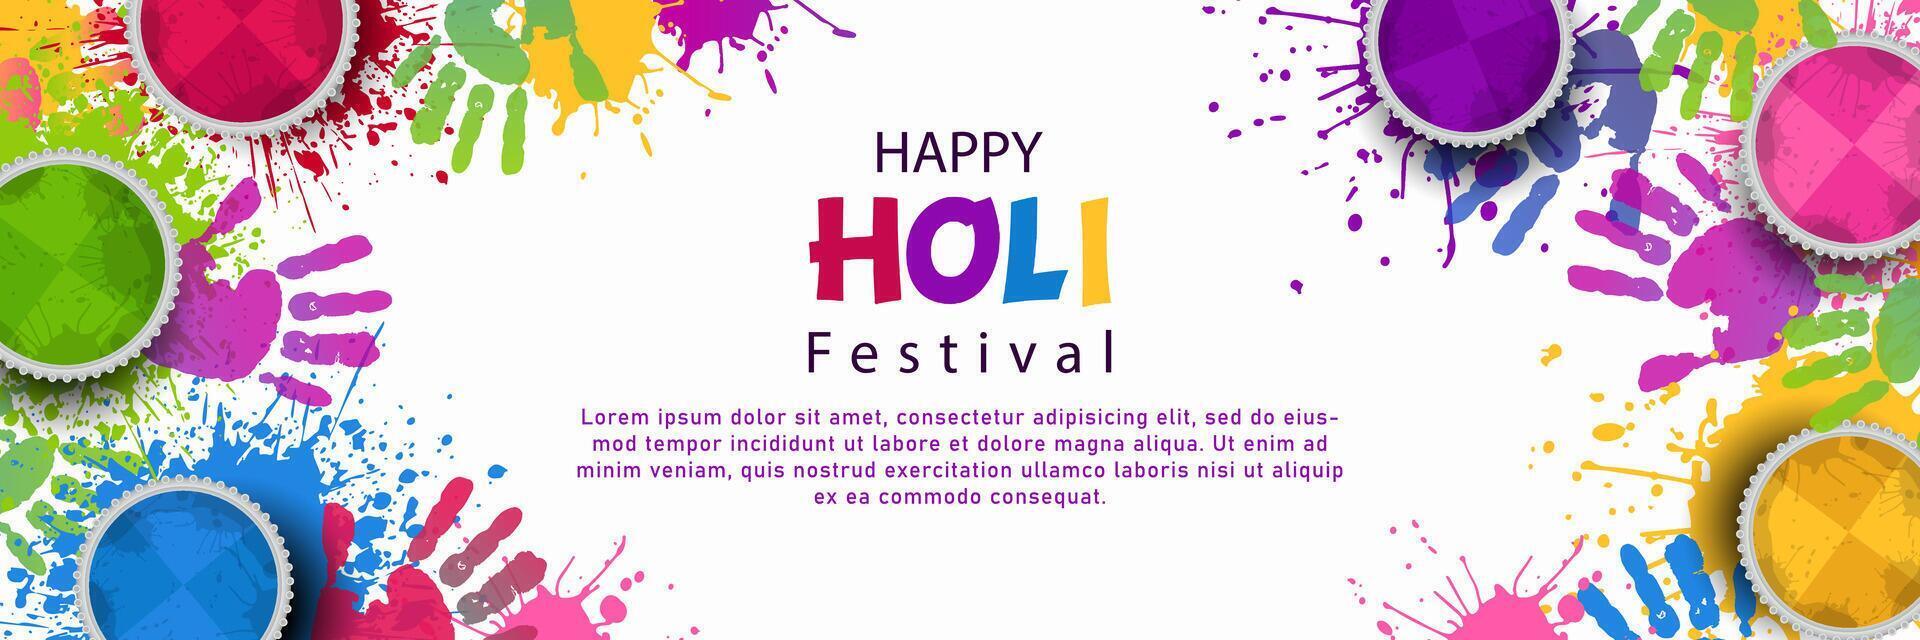 gelukkig holi festival voor banier, achtergrond met kleurrijk illustratie vector